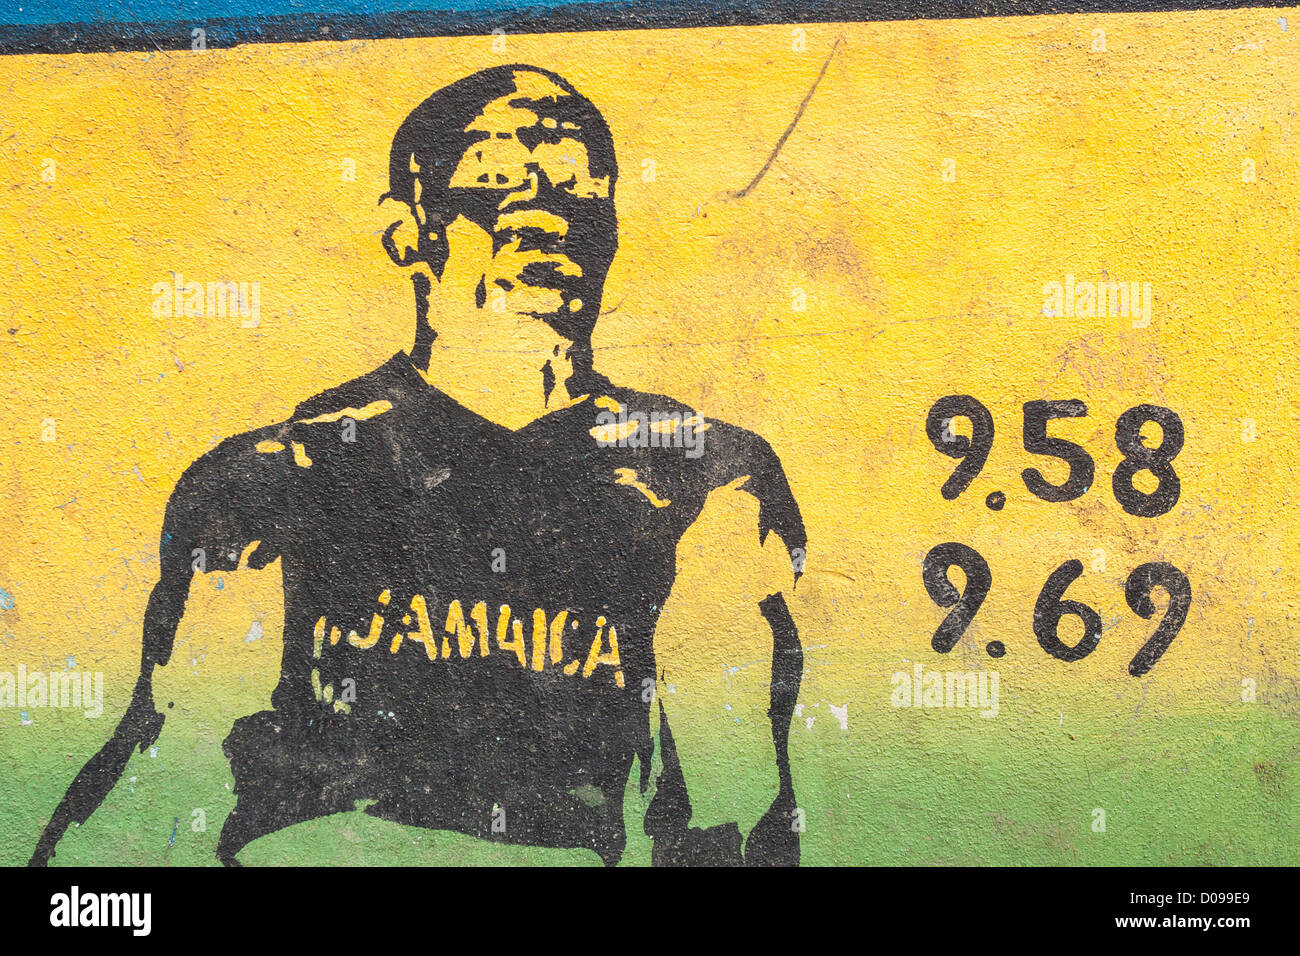 Le graffiti montrant le sprinter jamaïcain Usain Bolt SES DEUX RECORDS DU MONDE SUR 100 MÈTRES CENTRE VILLE PORT ANTONIO JAMAÏQUE CARAÏBES Banque D'Images